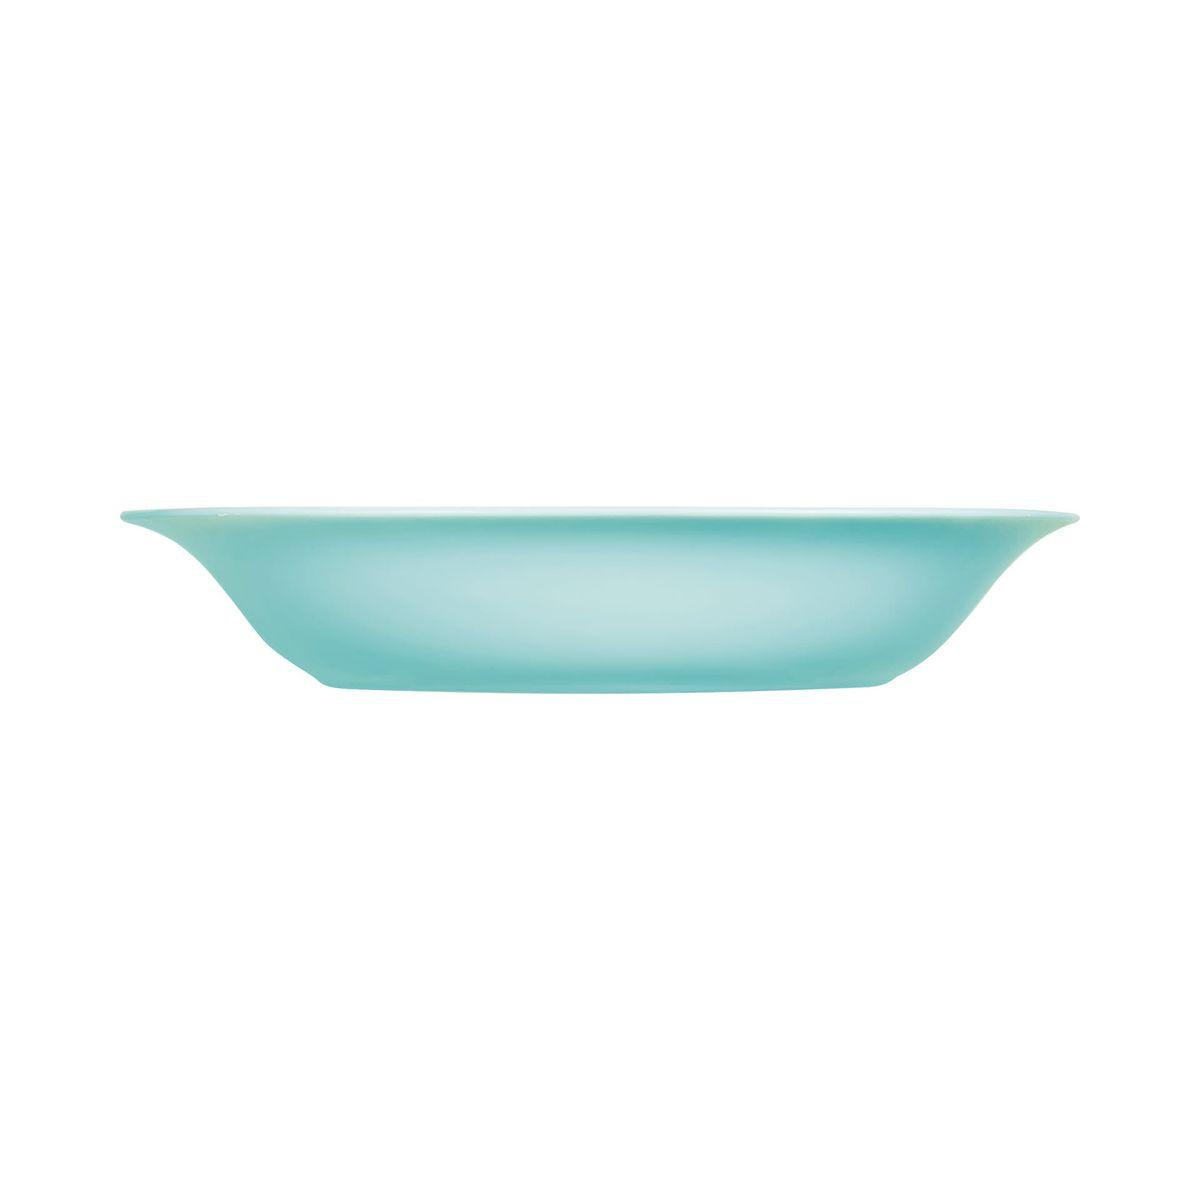 Assiette creuse turquoise 22,8 x 21,2 cm Carine - Luminarc